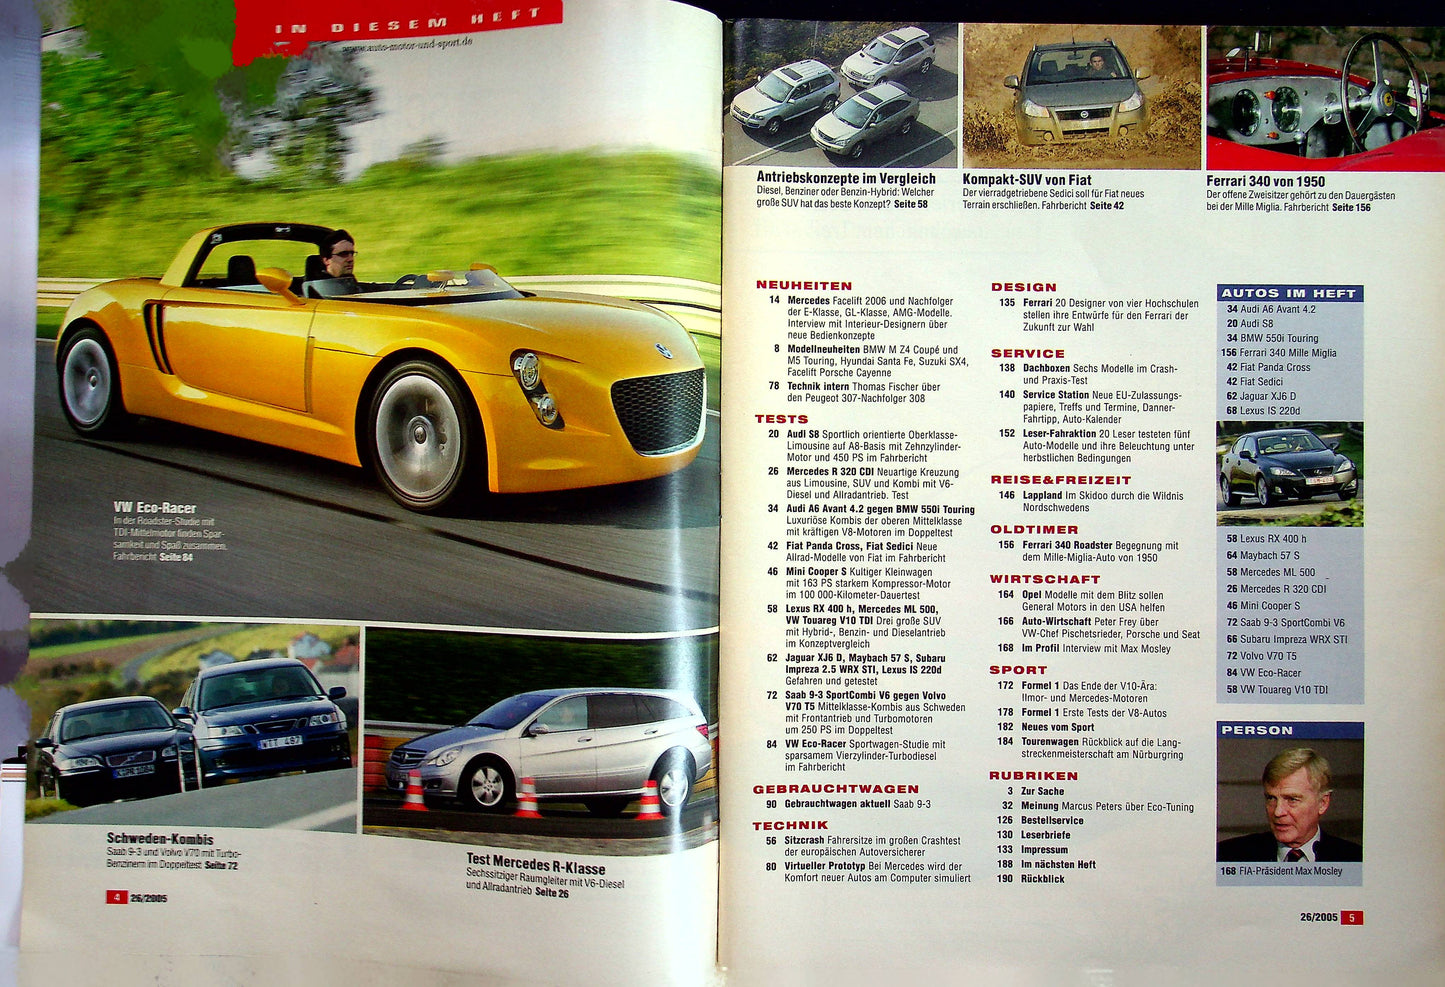 Auto Motor und Sport 26/2005